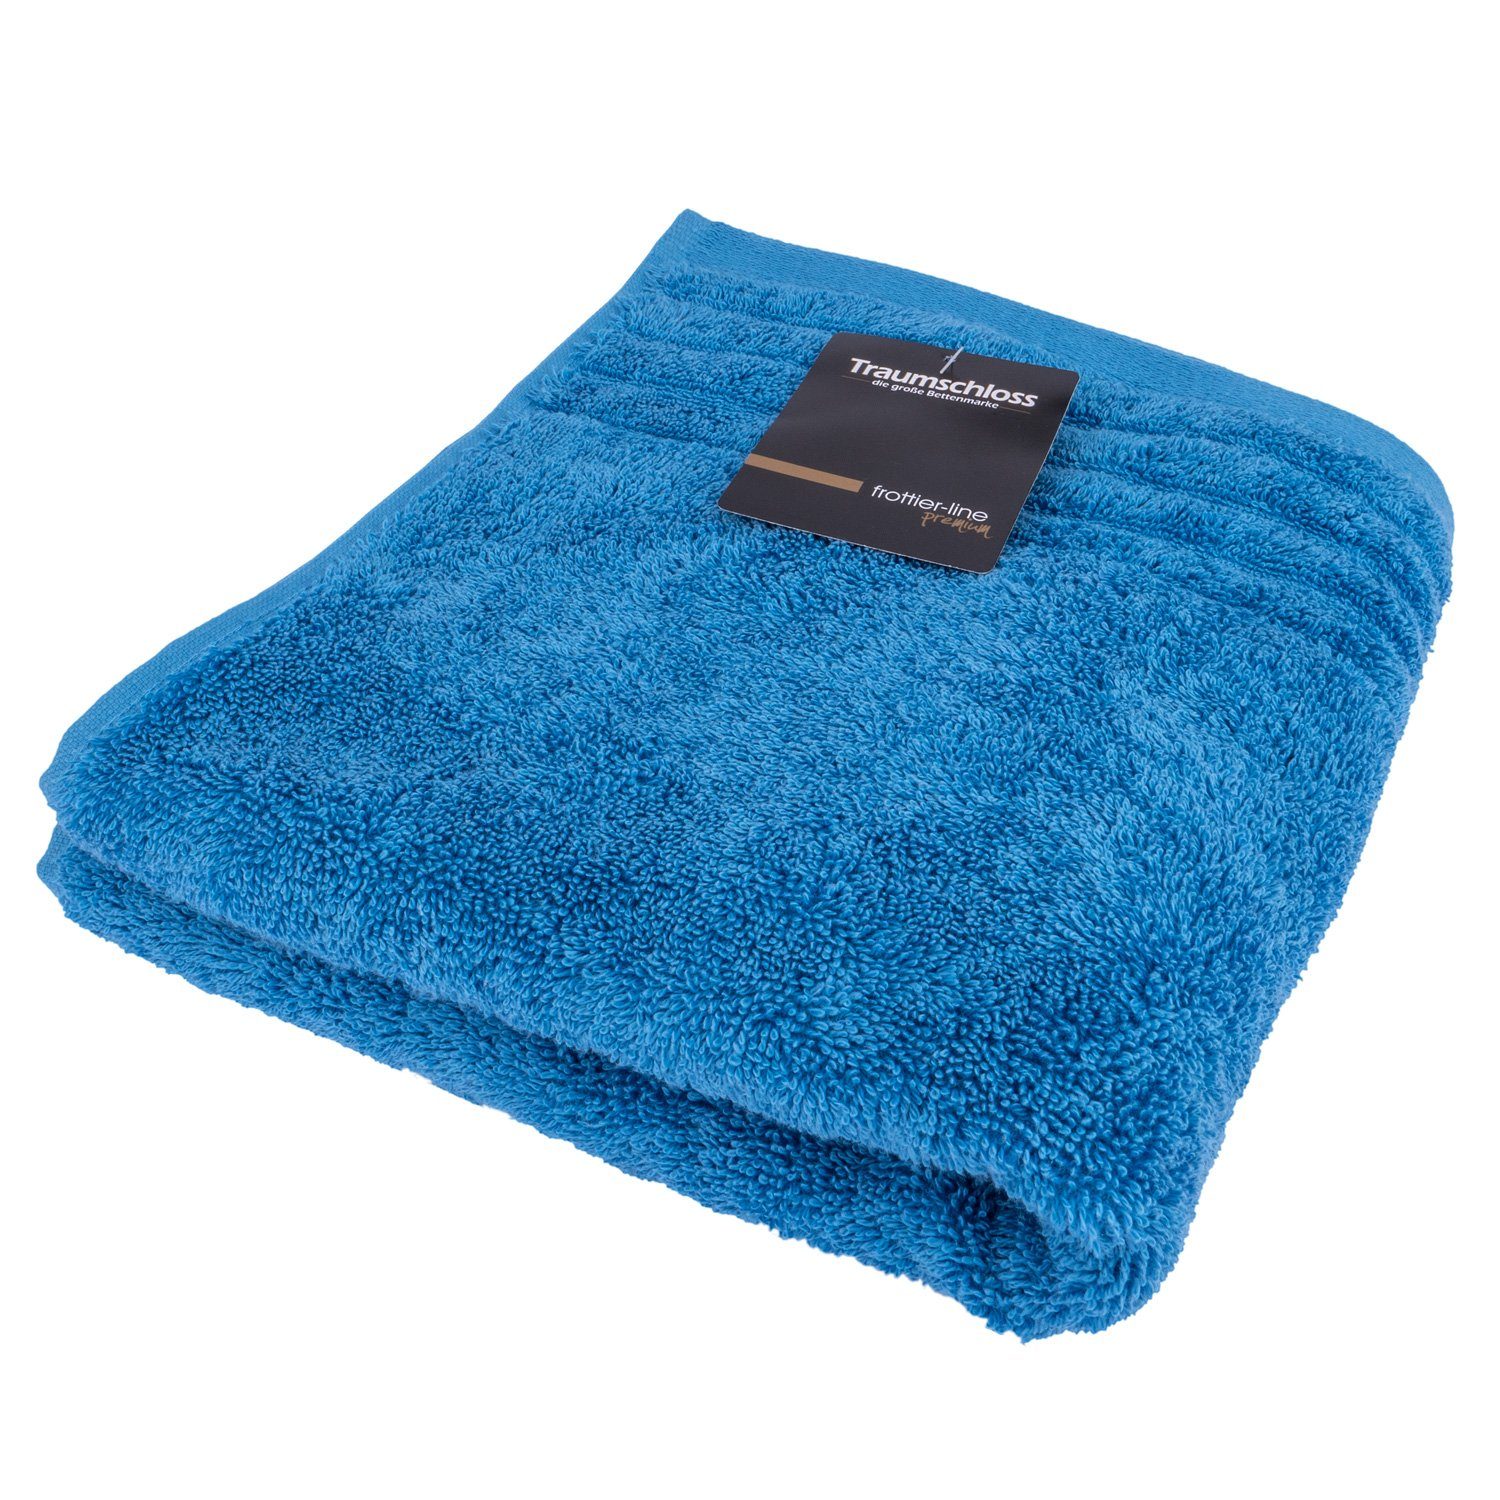 Traumschloss Handtuch Premium-Line, Frottier (1-St), 100% amerikanische Supima Baumwolle mit 600g/m² nordic blau